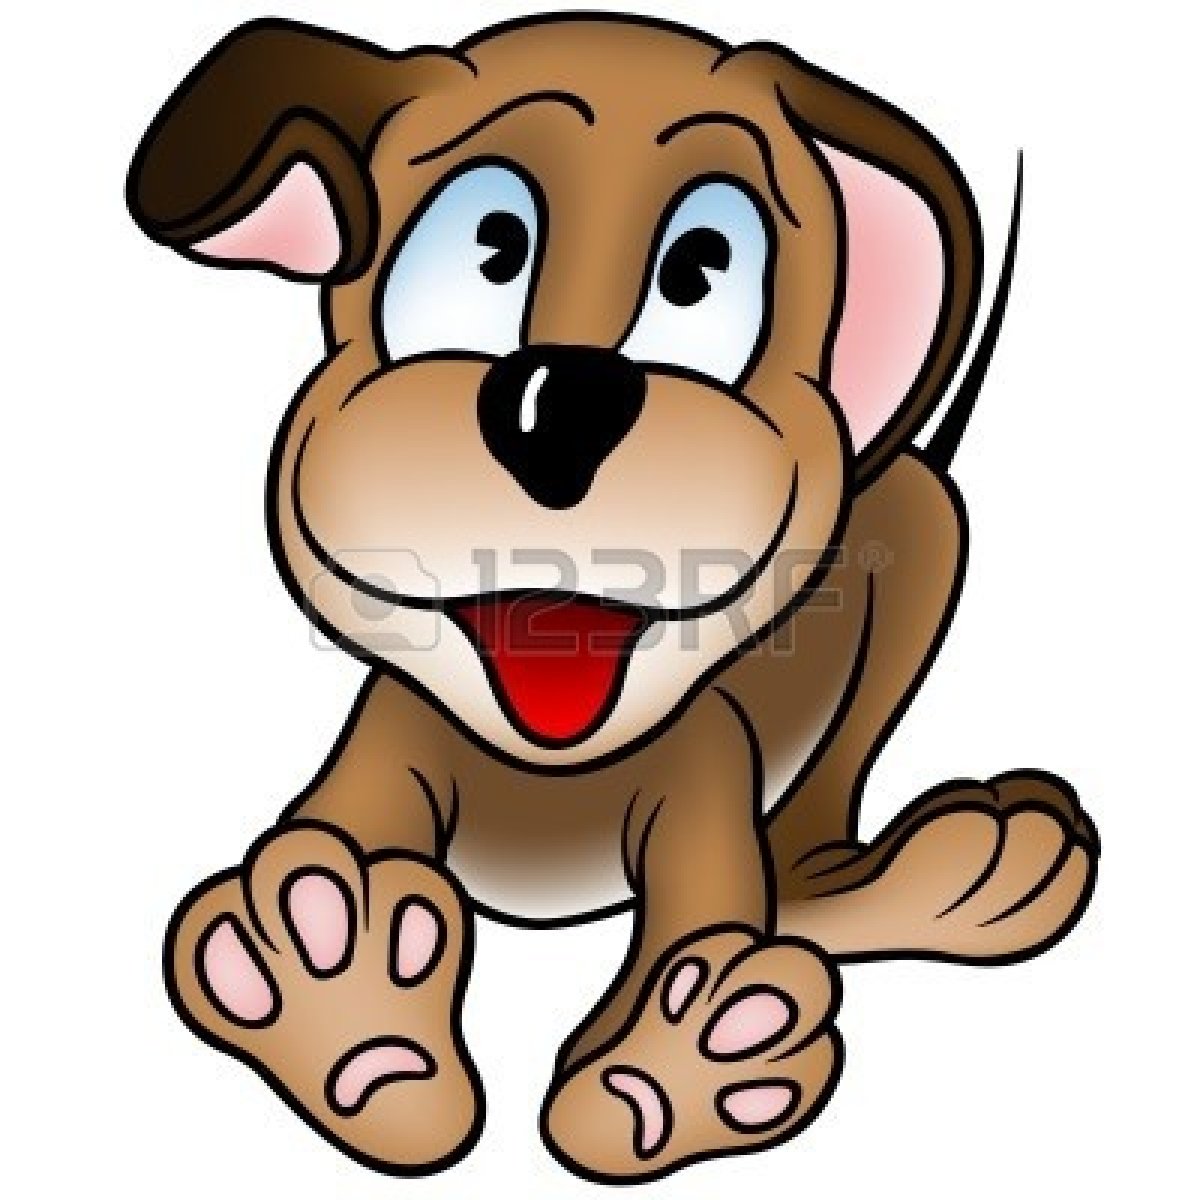 Animated Happy Dog Clip Art Free Puppy Cartoon Stock Photos ...